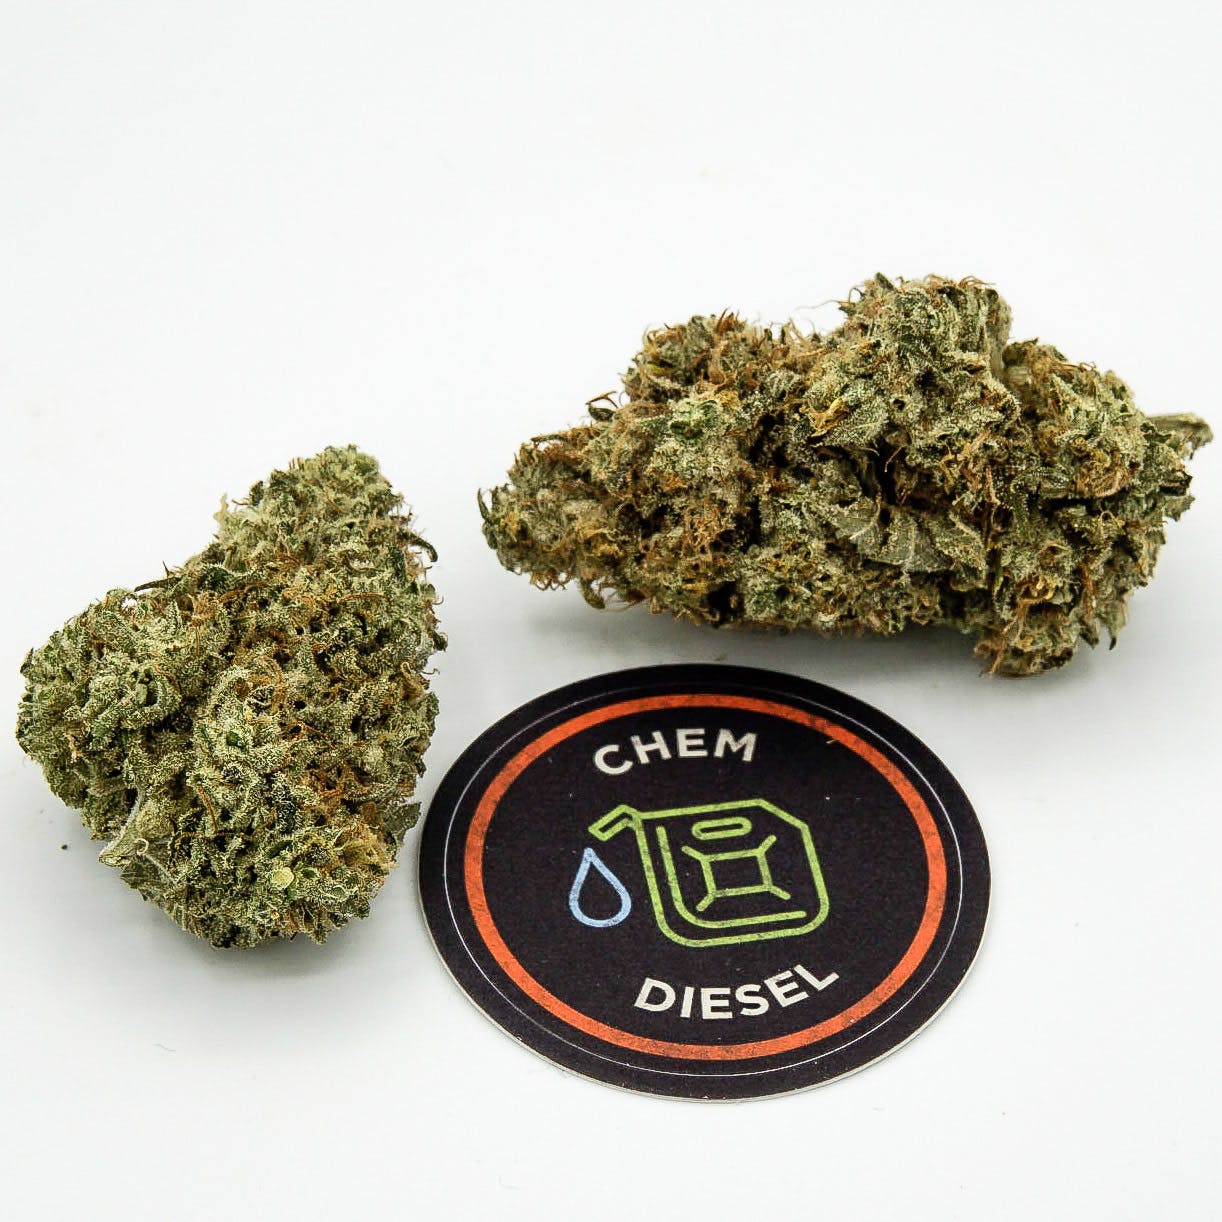 Chem Diesel by JAR Cannabis Co.